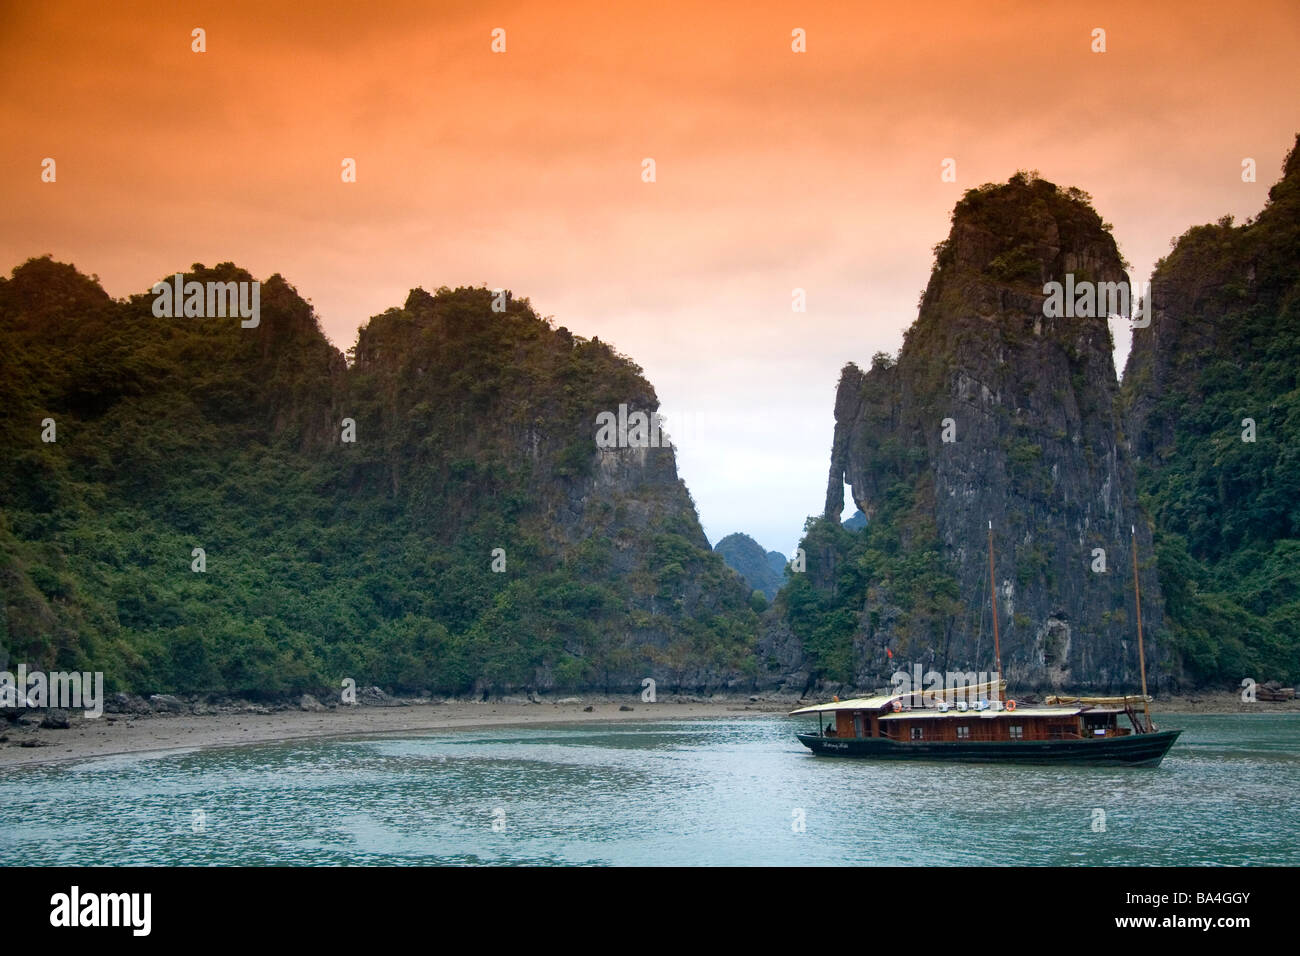 Vistas panorámicas de los karsts de piedra caliza y embarcaciones turísticas en la bahía de Ha Long Vietnam Foto de stock